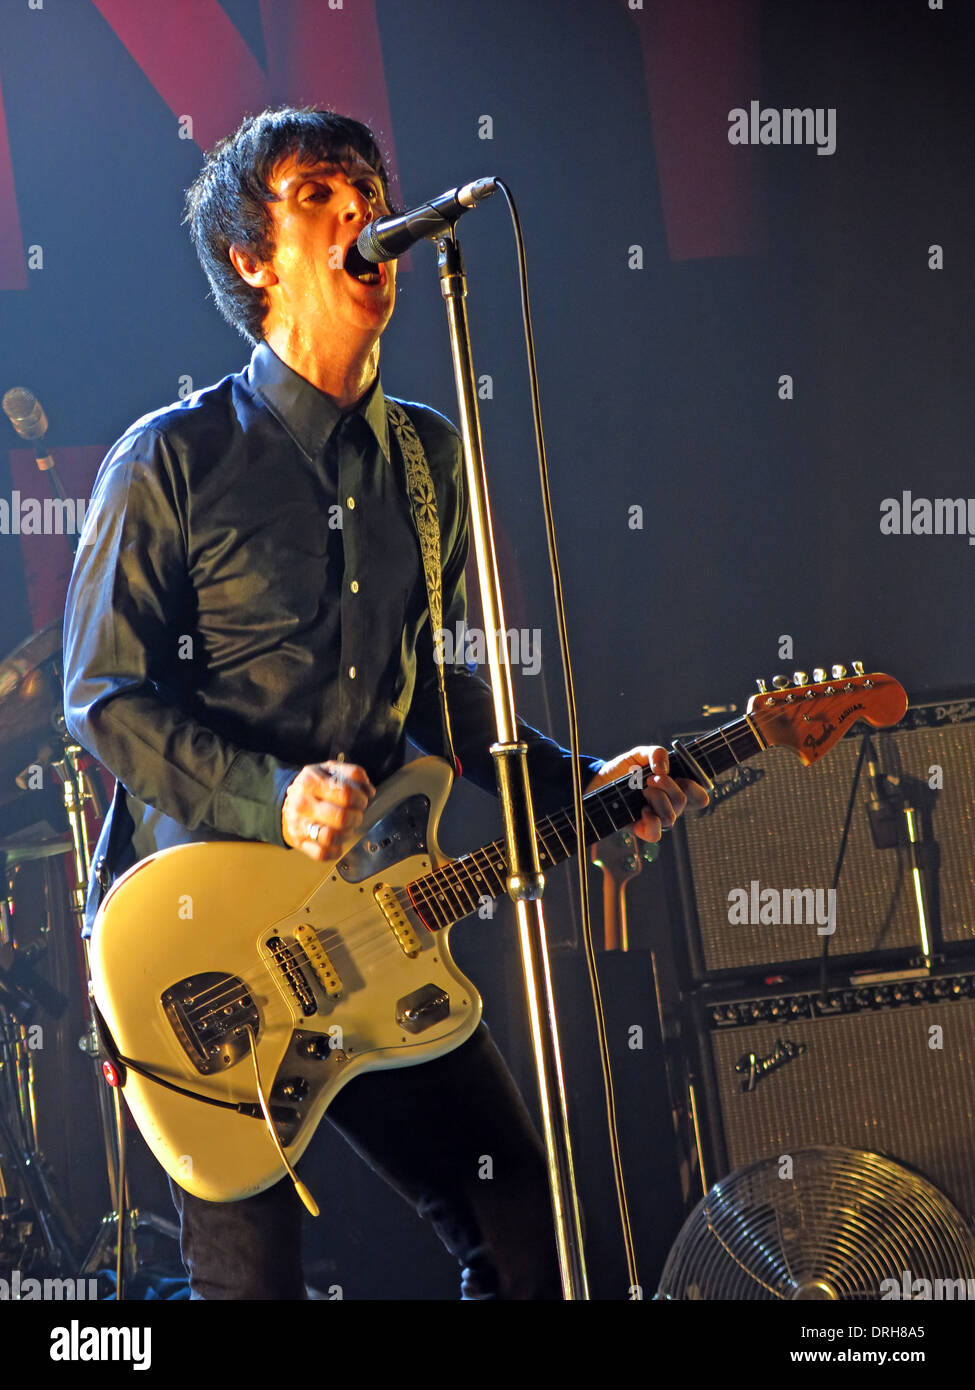 Johnny Marr von Smiths Manchester Academy live auf der Bühne spielen Fender Gitarre England UK 2013 10.12.2013 Stockfoto